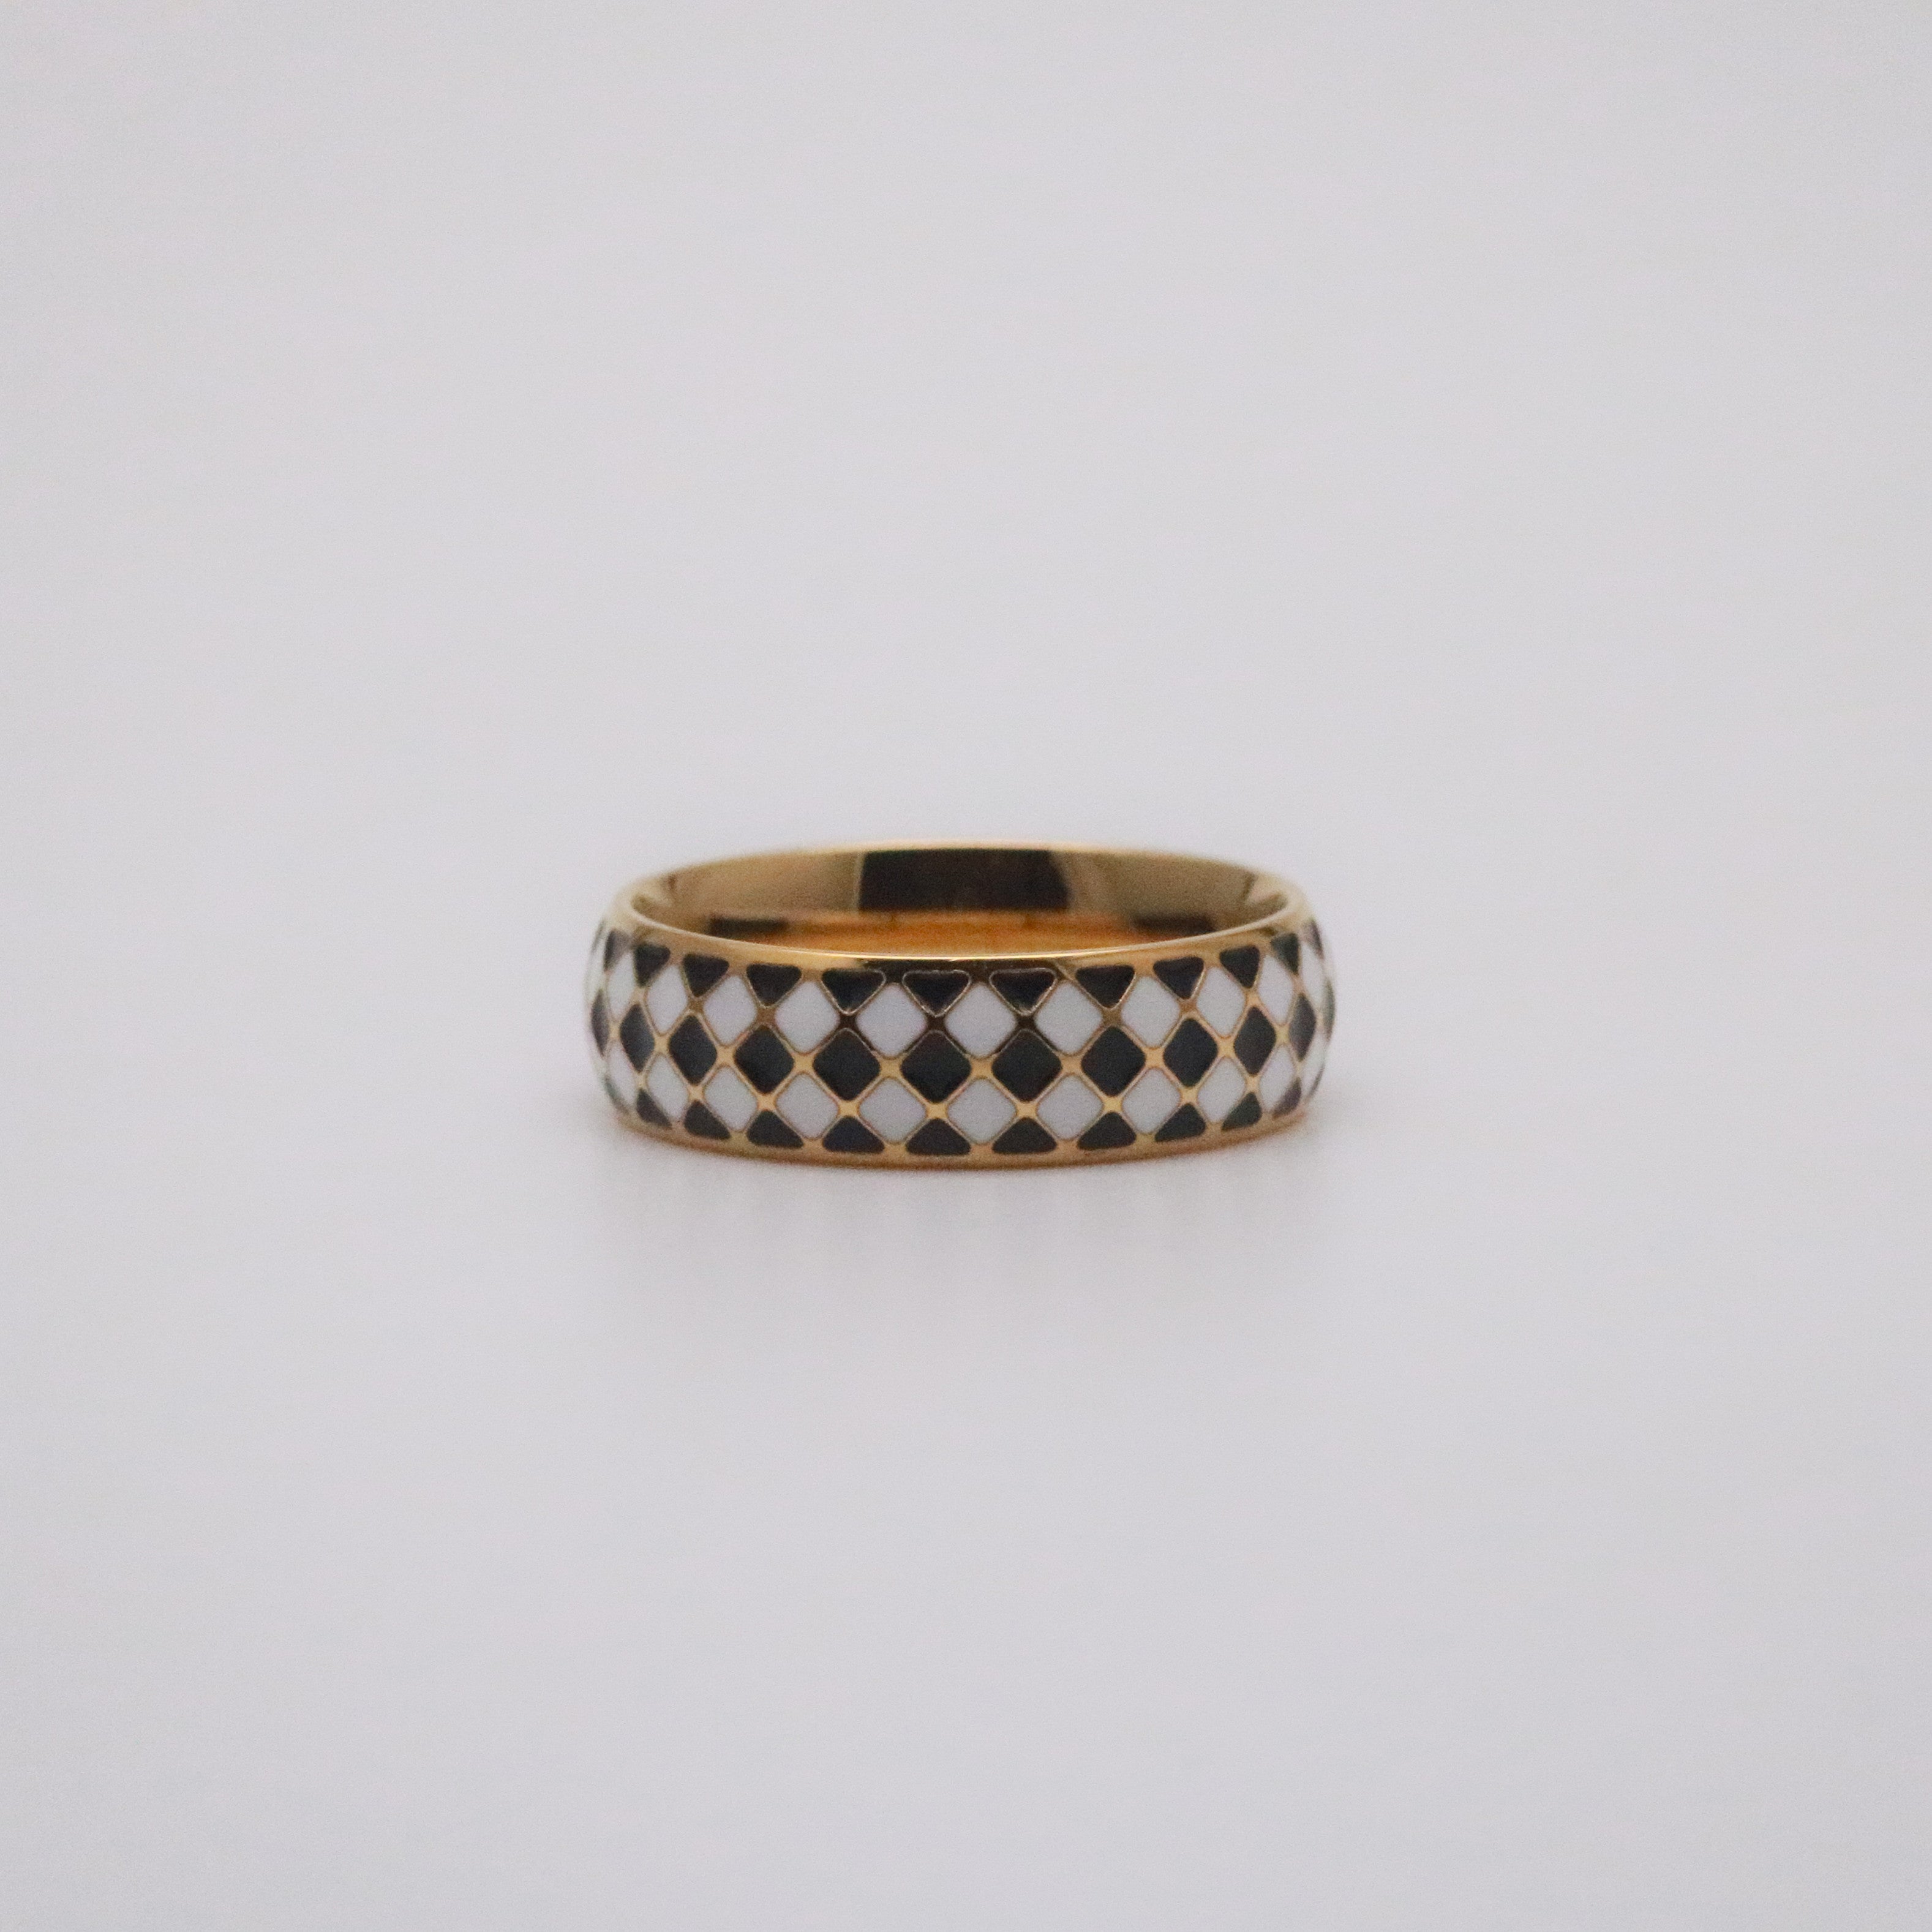 Checkered band ring